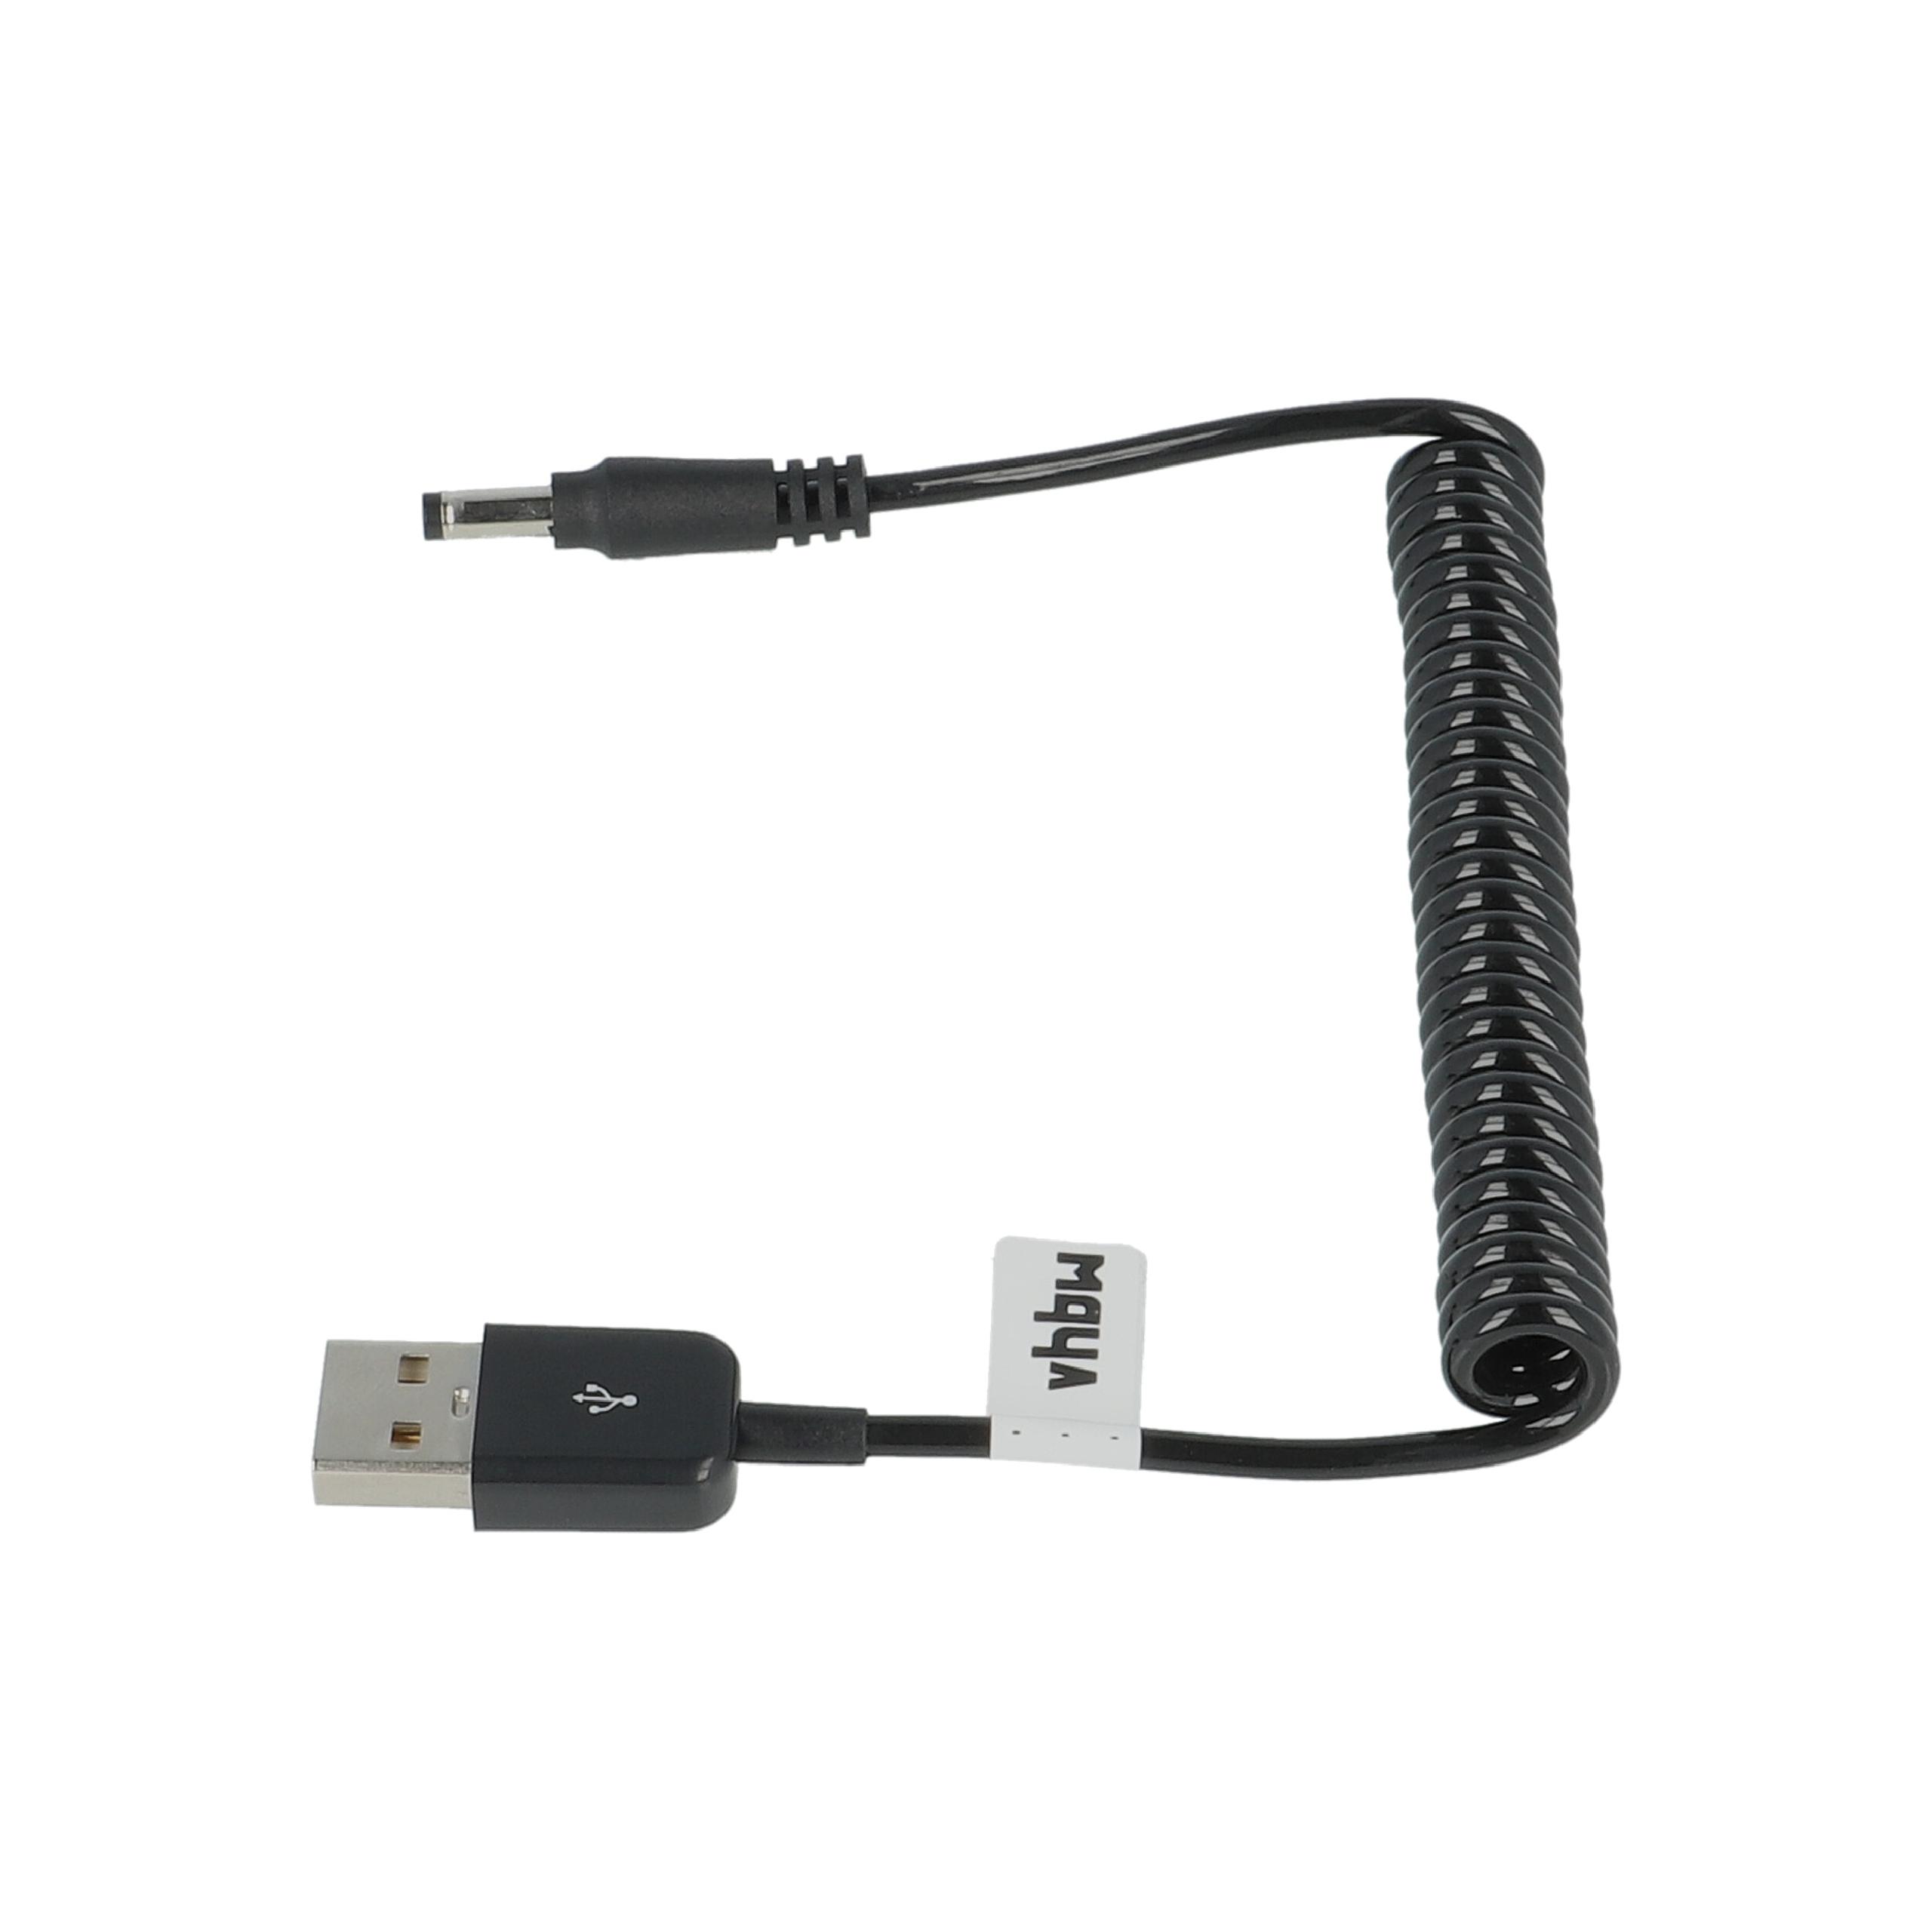 Cable de carga USB reemplaza Panasonic K2GHYYS00002 para cámaras, videocámaras Panasonic - 1 m